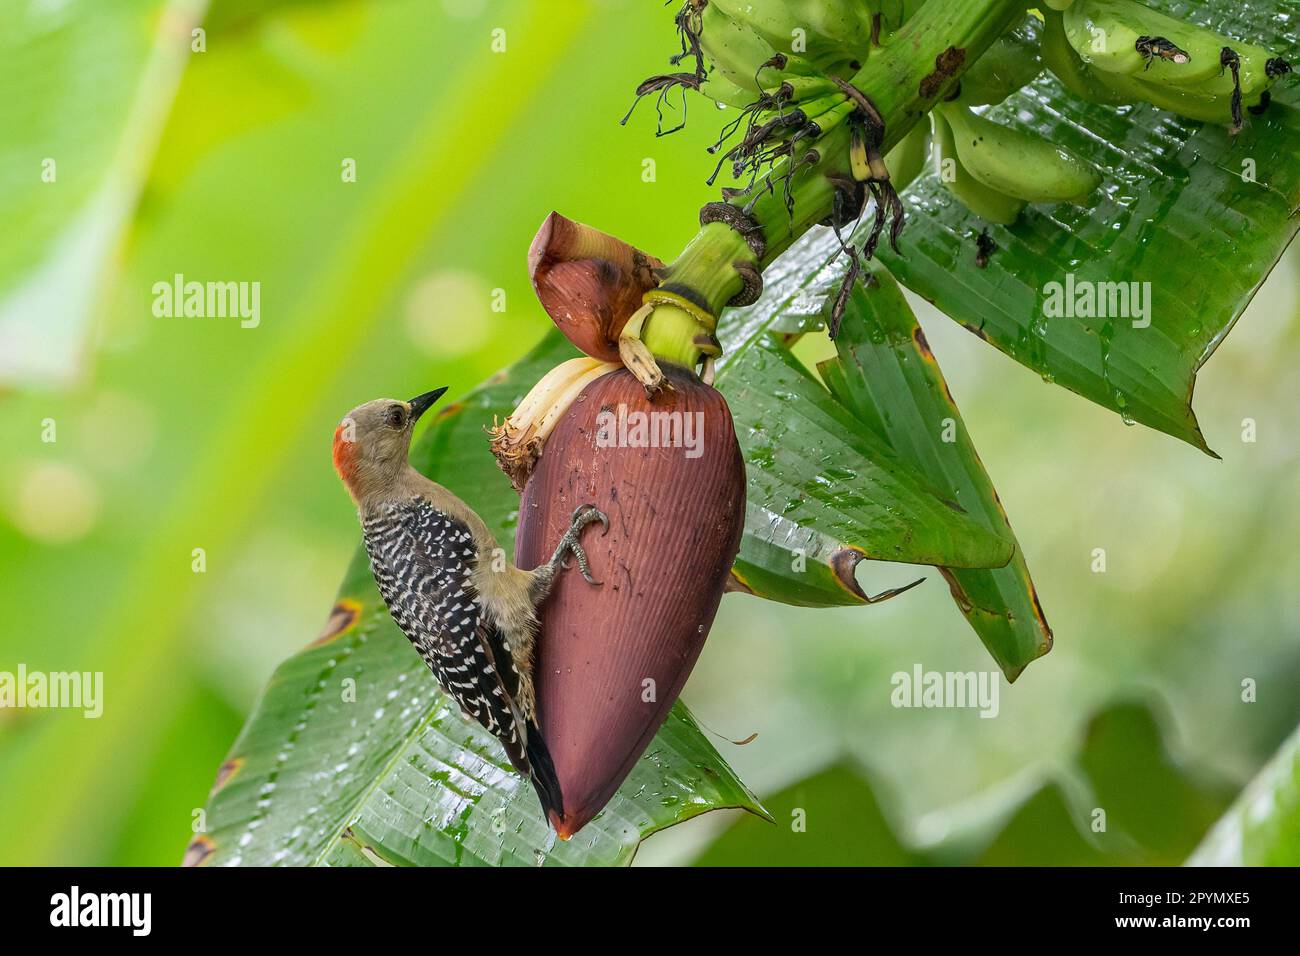 Roter Specht (Melanerpes rubricapillus), der an einer Bananenblume hängt. Stockfoto